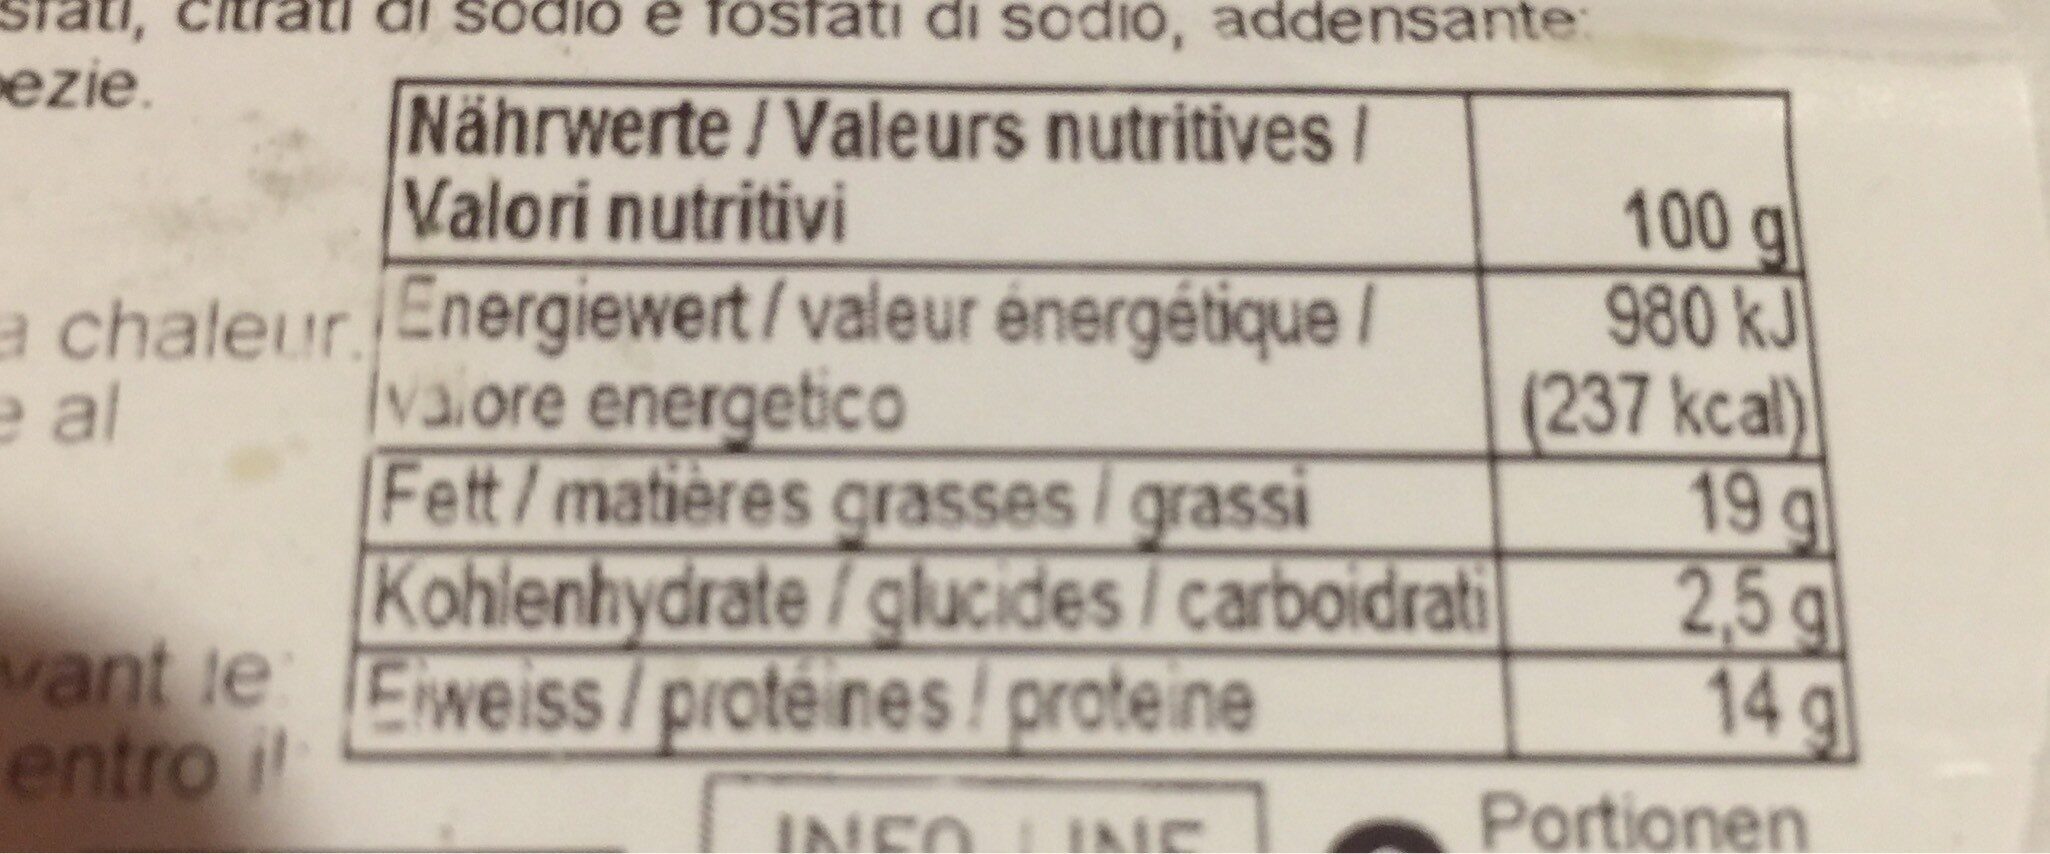 Suisse nature - Valori nutrizionali - fr